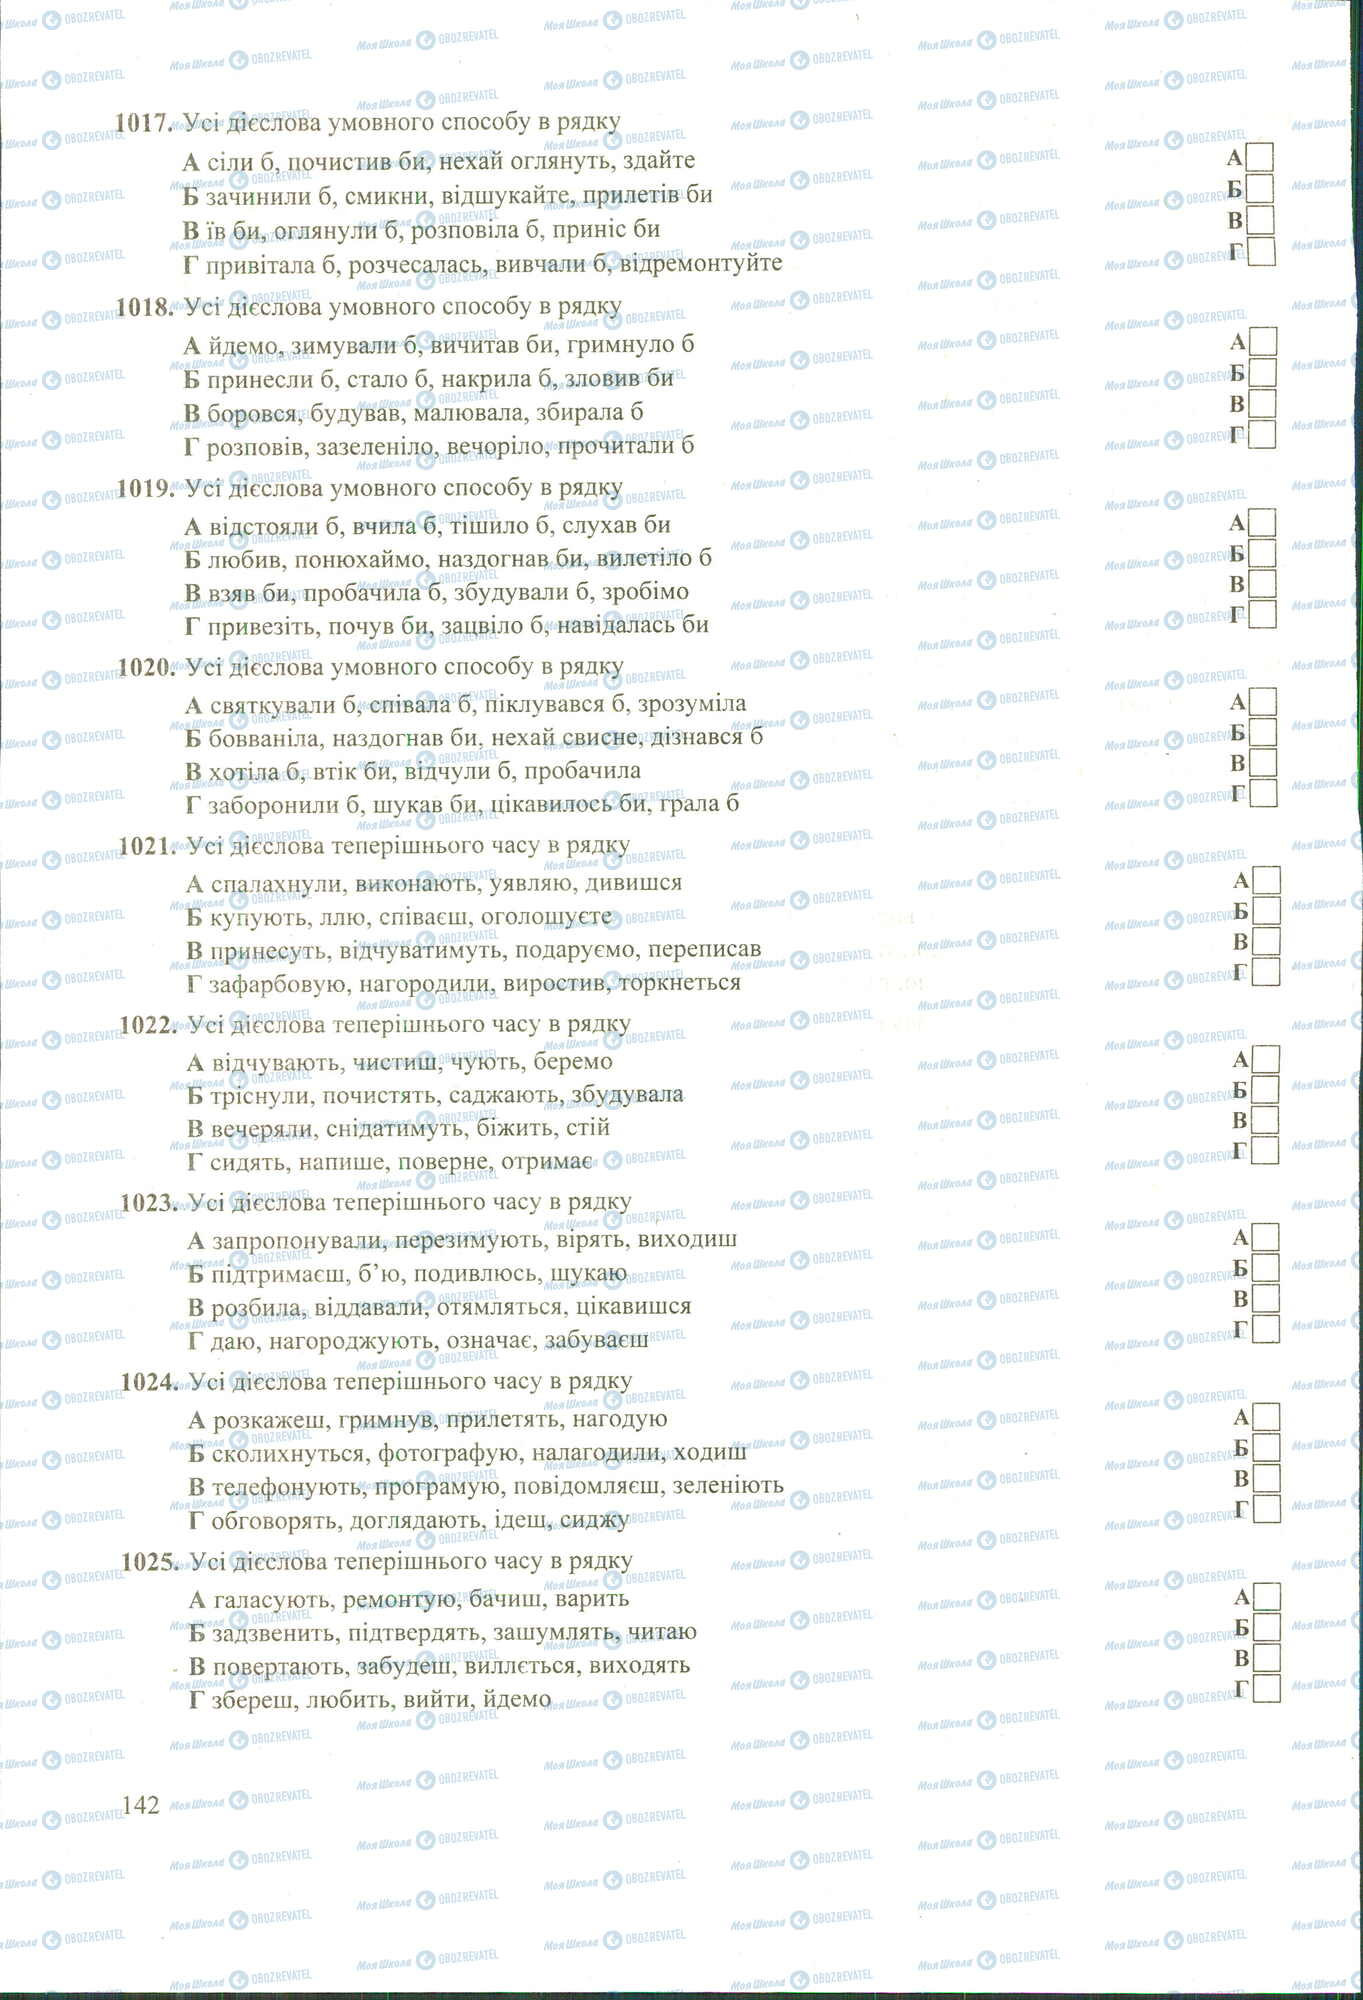 ЗНО Укр мова 11 класс страница 1017-1025